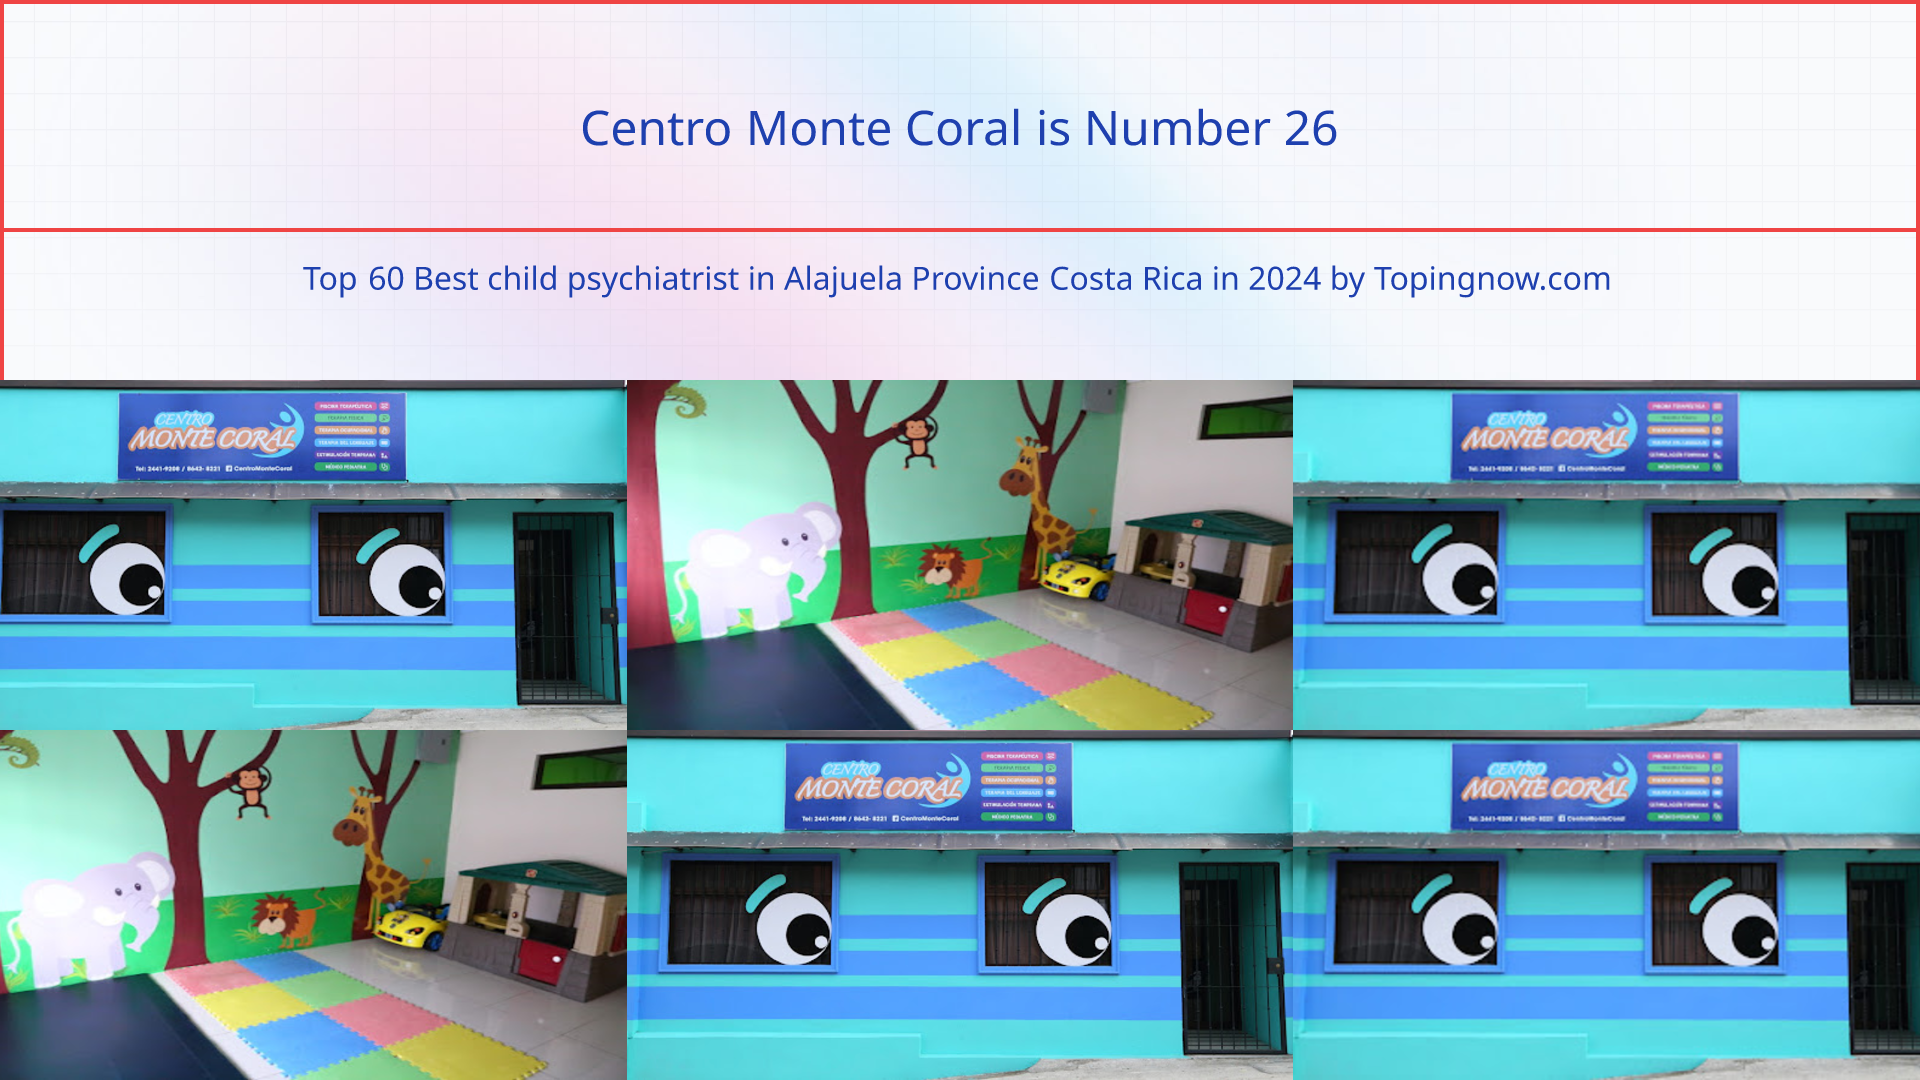 Centro Monte Coral: Top 60 Best child psychiatrist in Alajuela Province Costa Rica in 2024